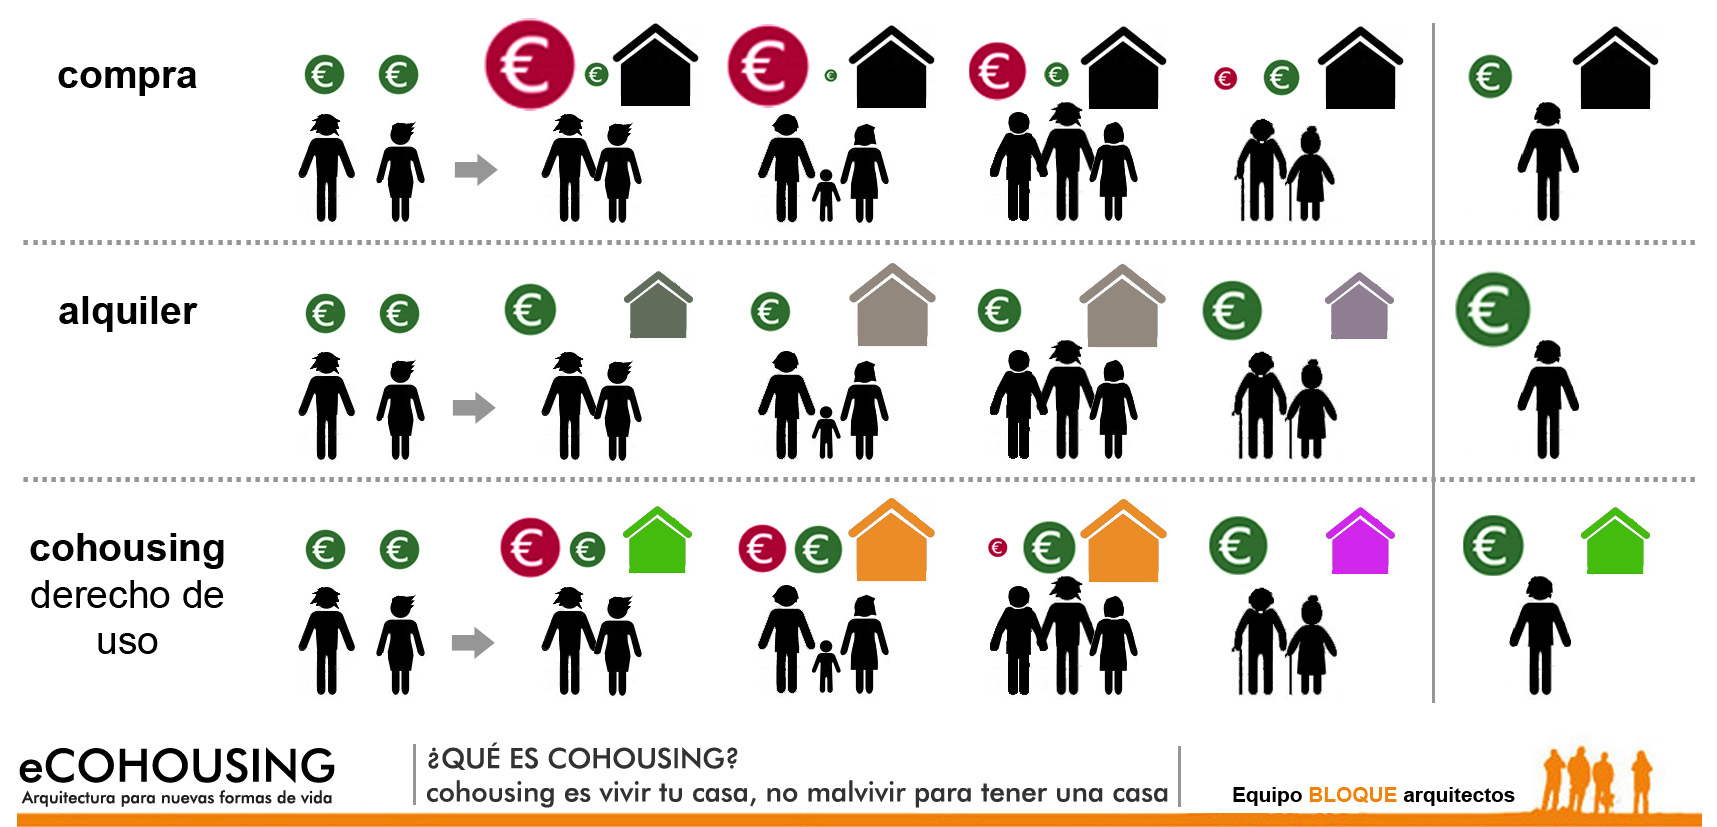 ecohousing-QUE ES COHOUSING-ECONOMIA Y CESION DE USO